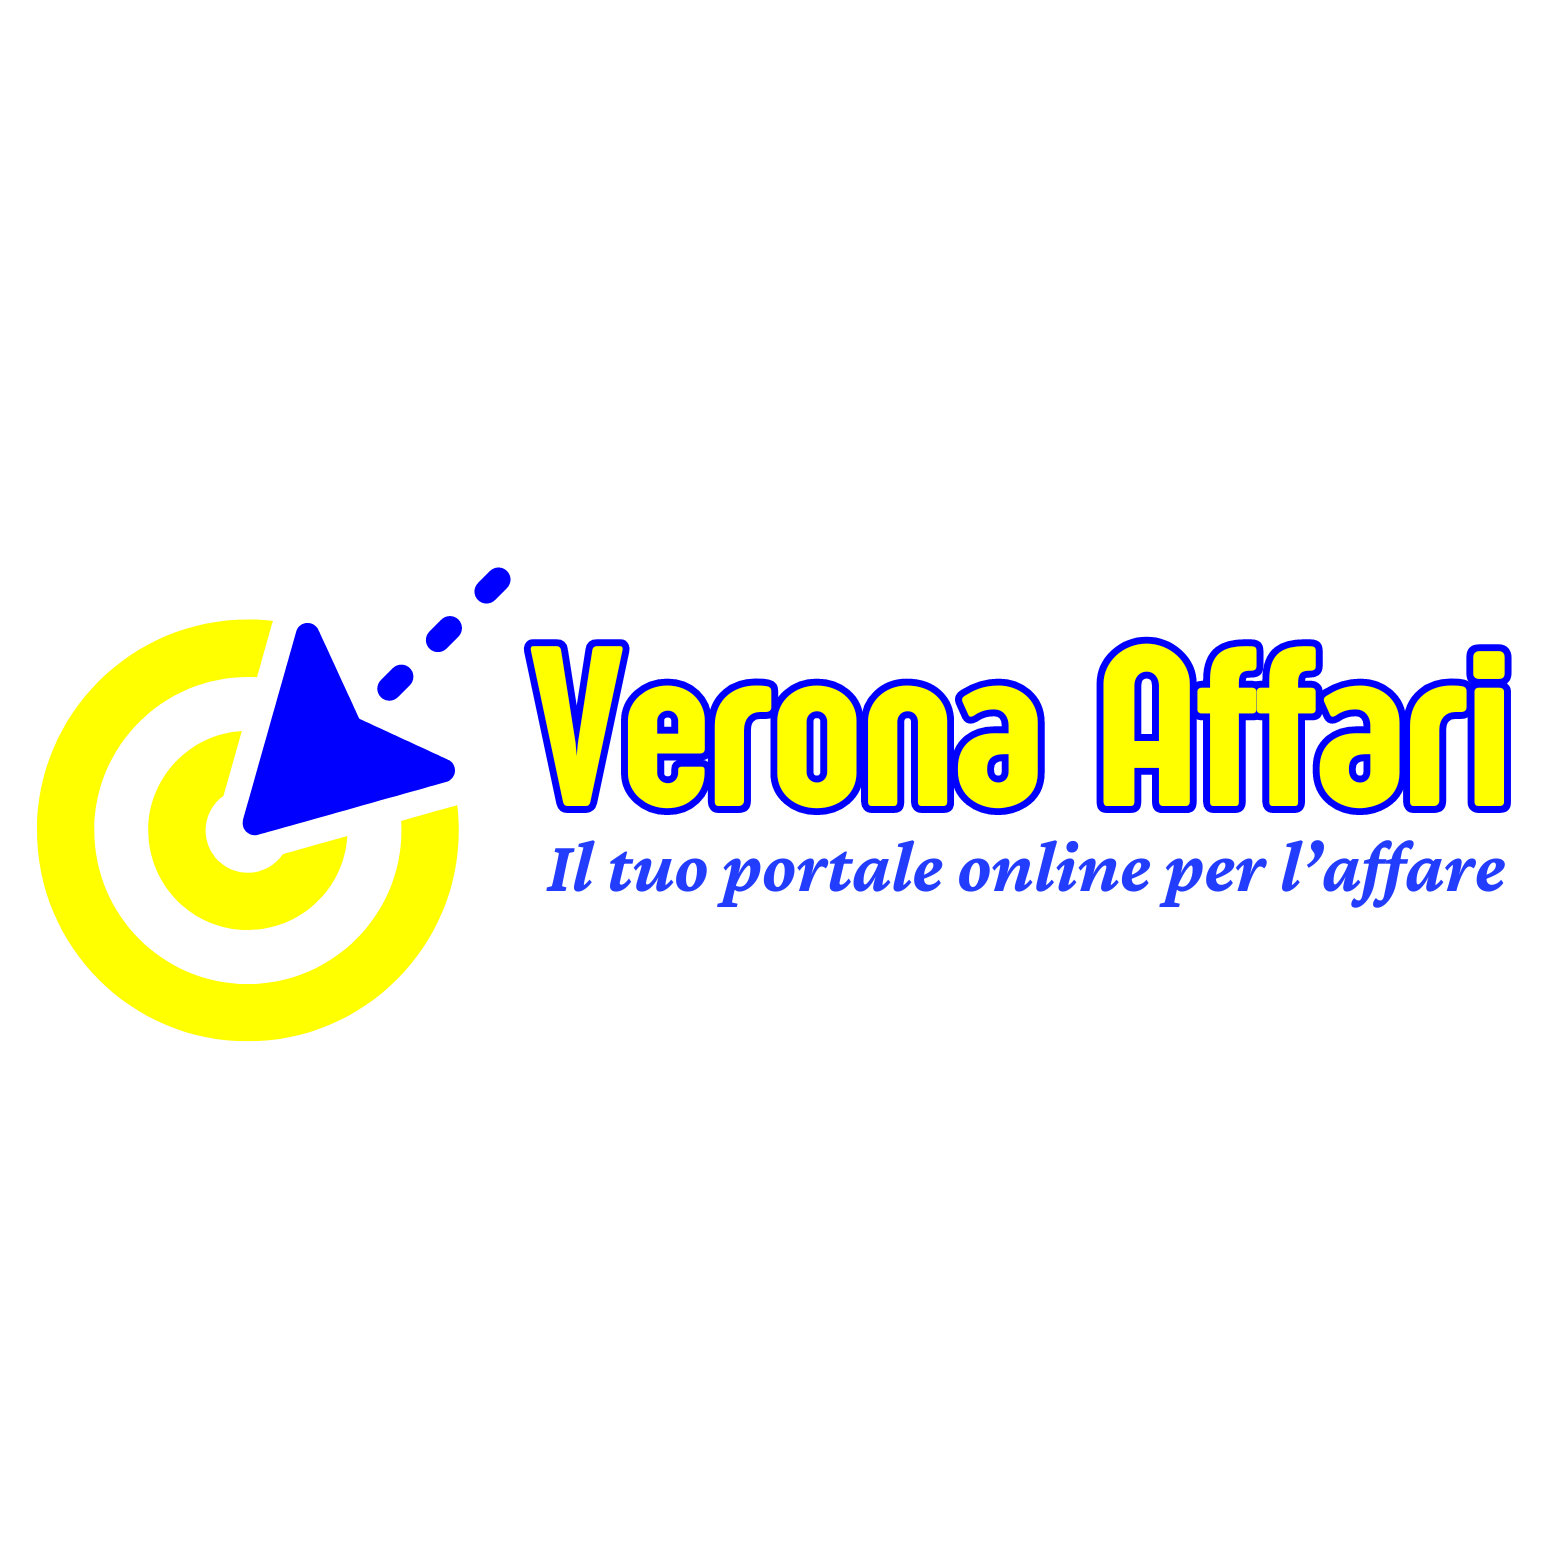 Verona Affari - Il tuo portale online per l'affare